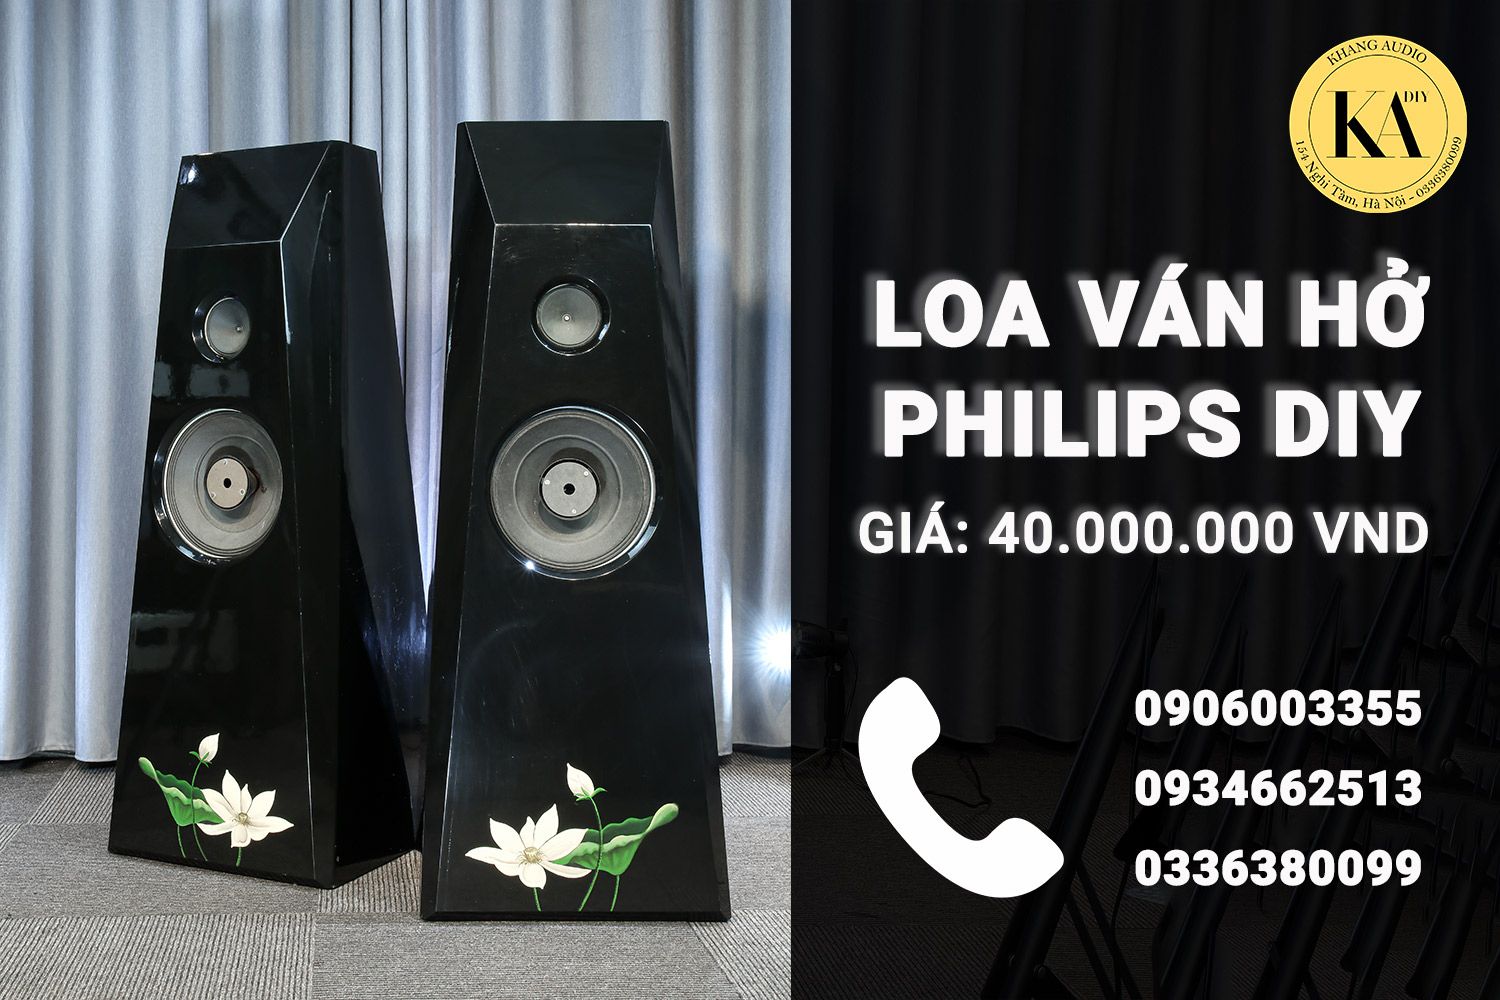 Loa Ván Hở Philips Khang Audio DIY